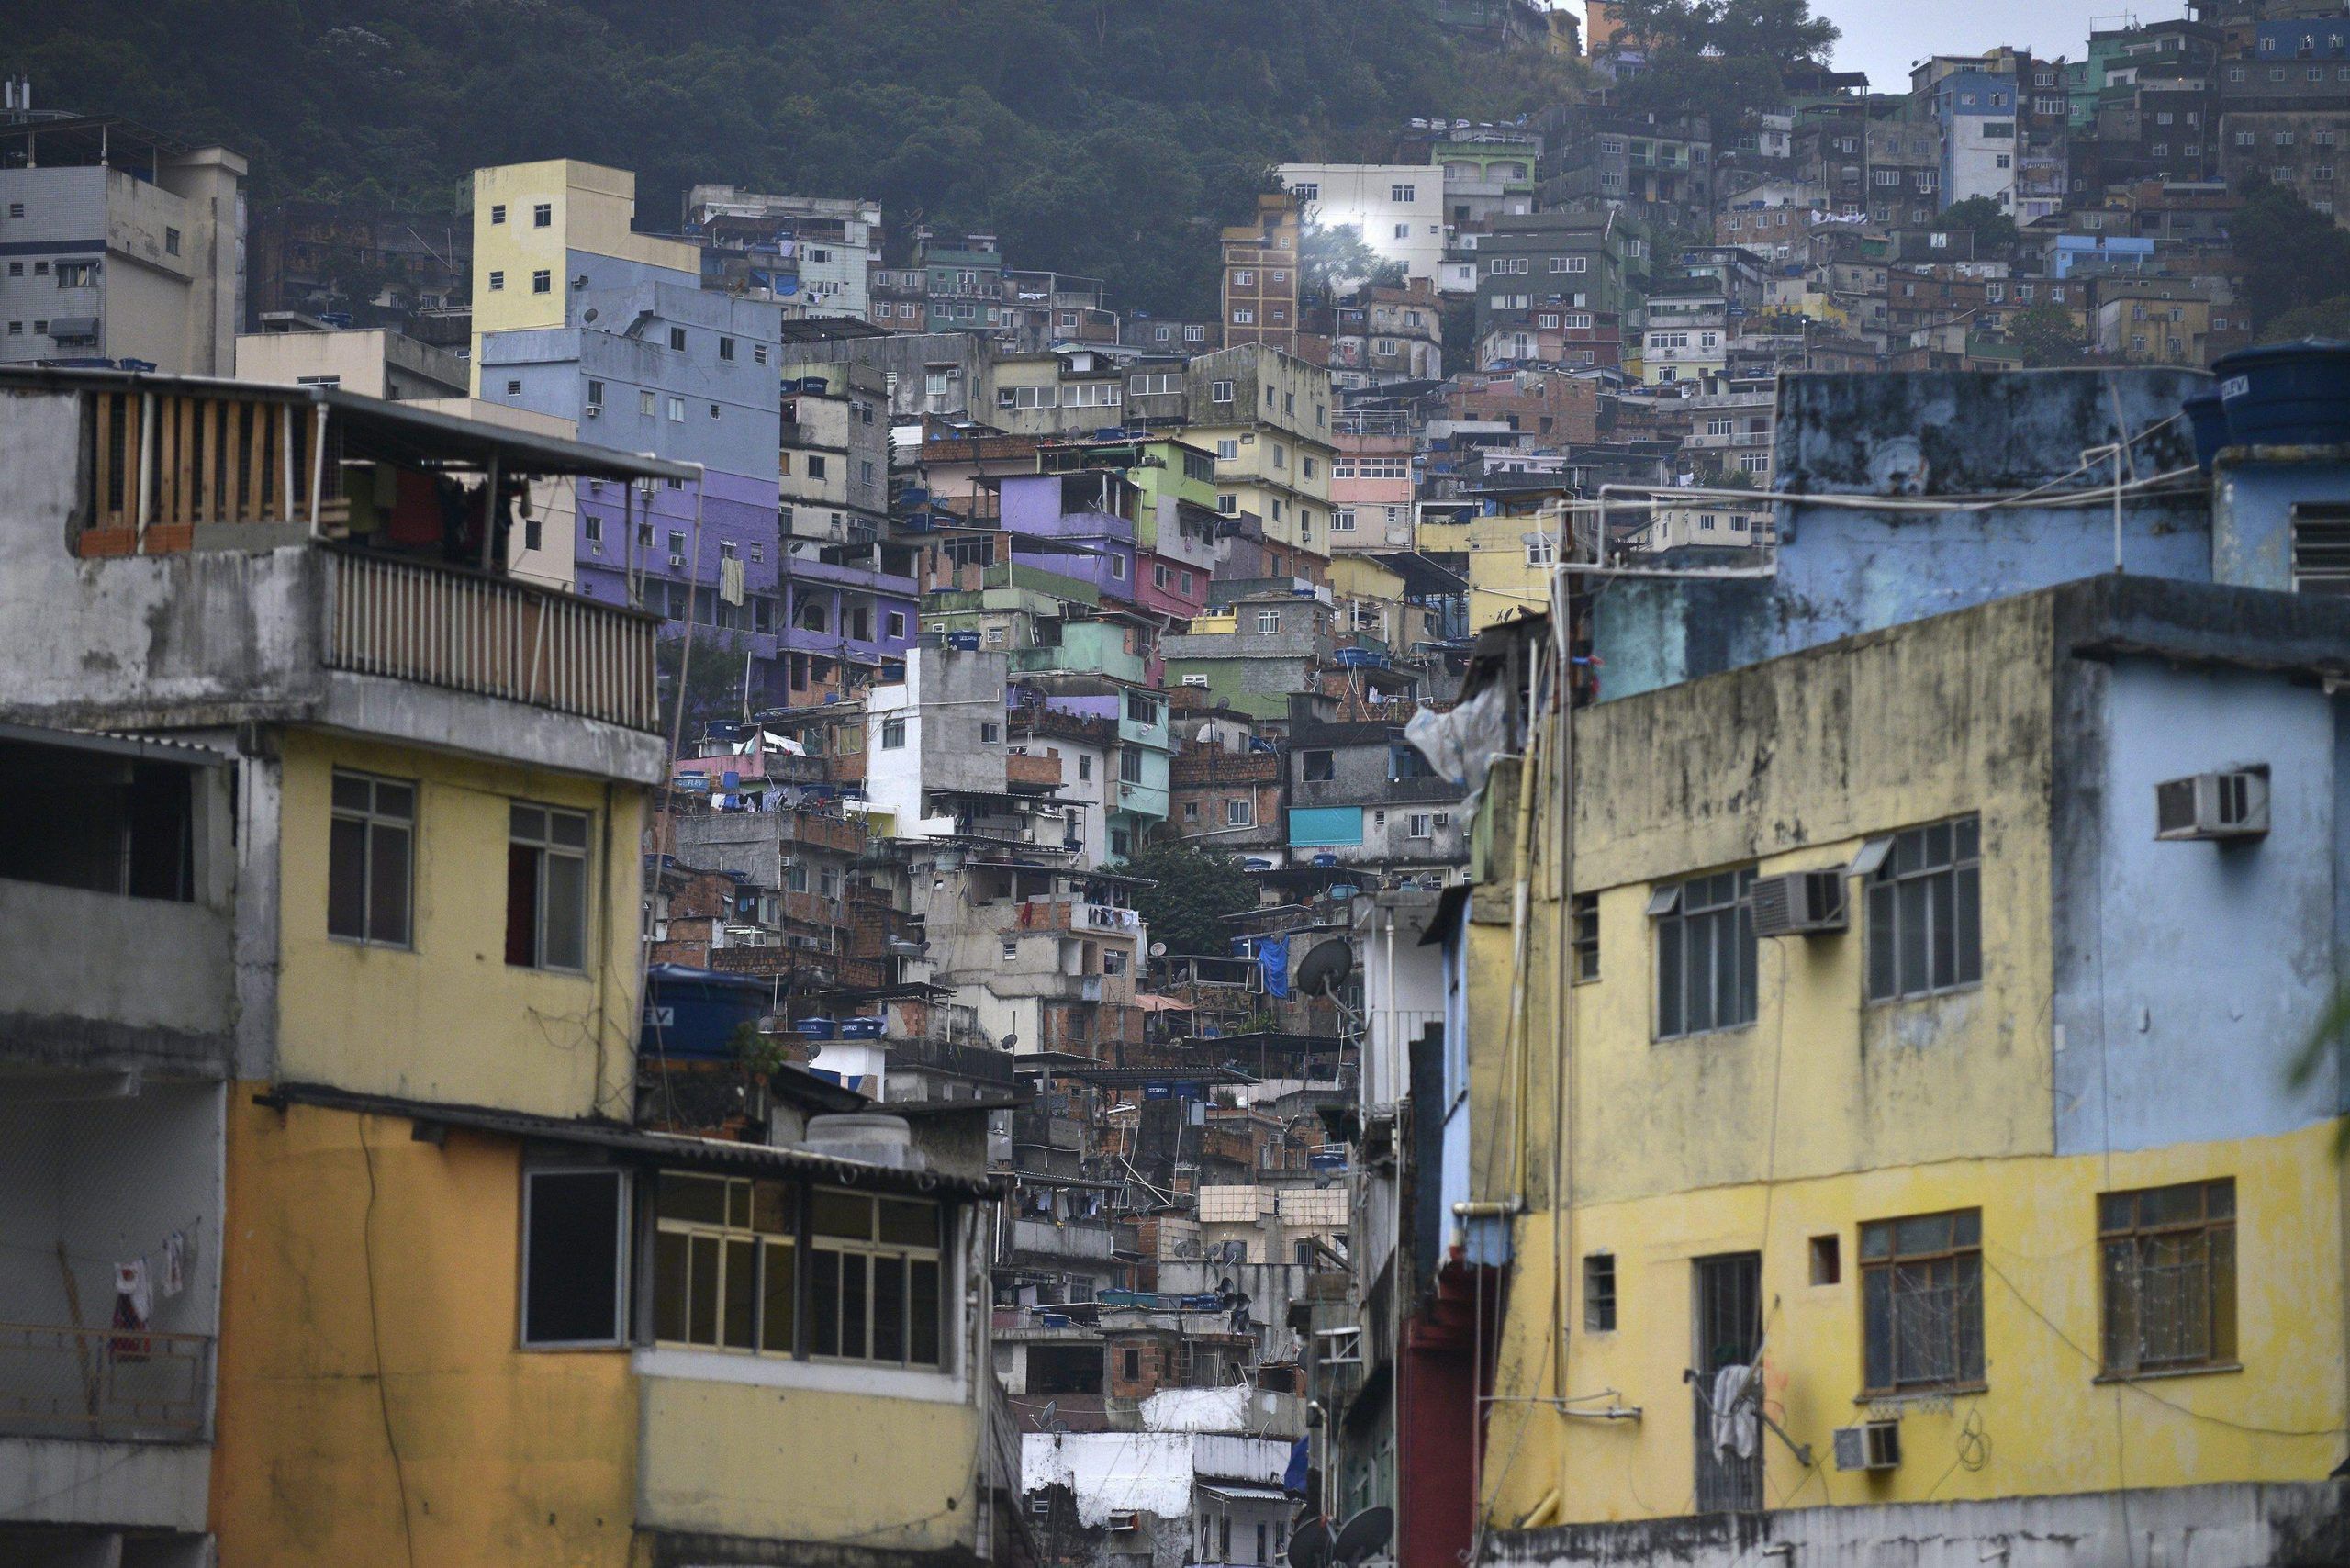 Daily life in the Rocinha favela at the south of Rio de Janeiro